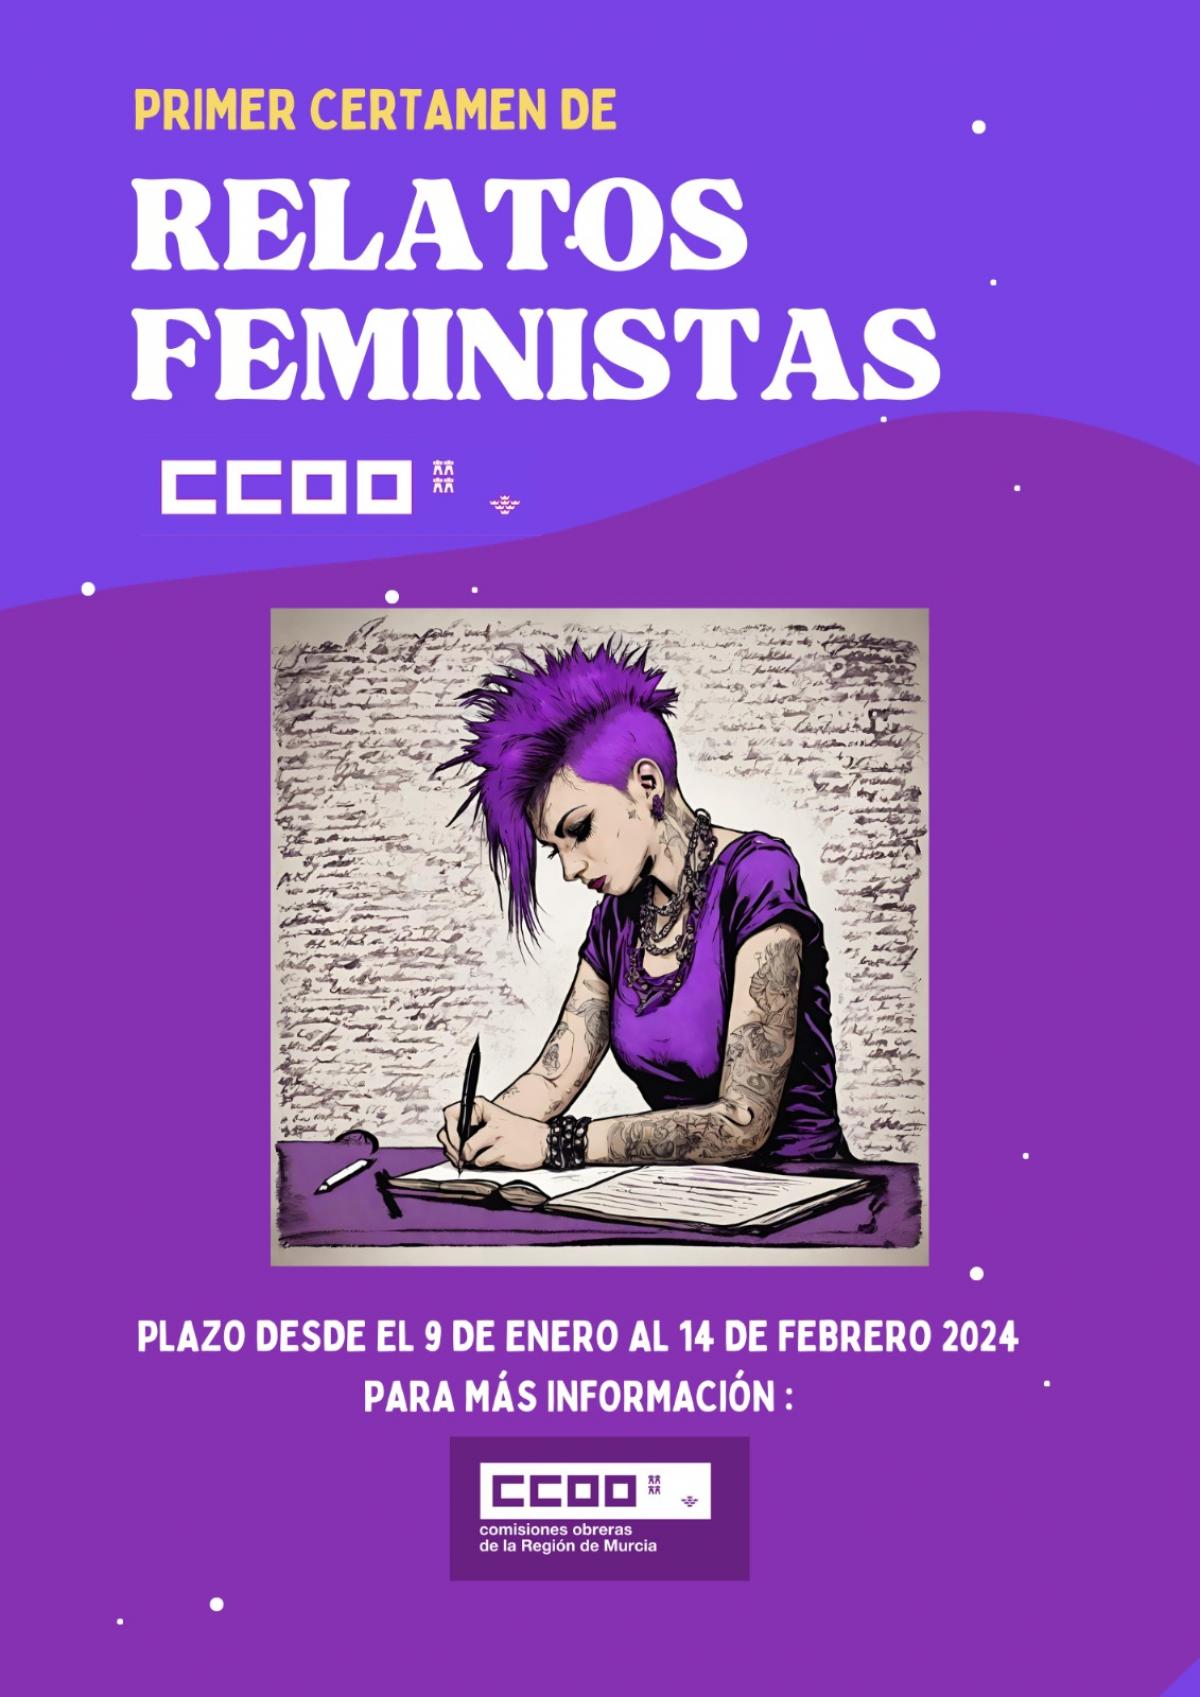 CERTAMEN DE RELATOS FEMINISTAS